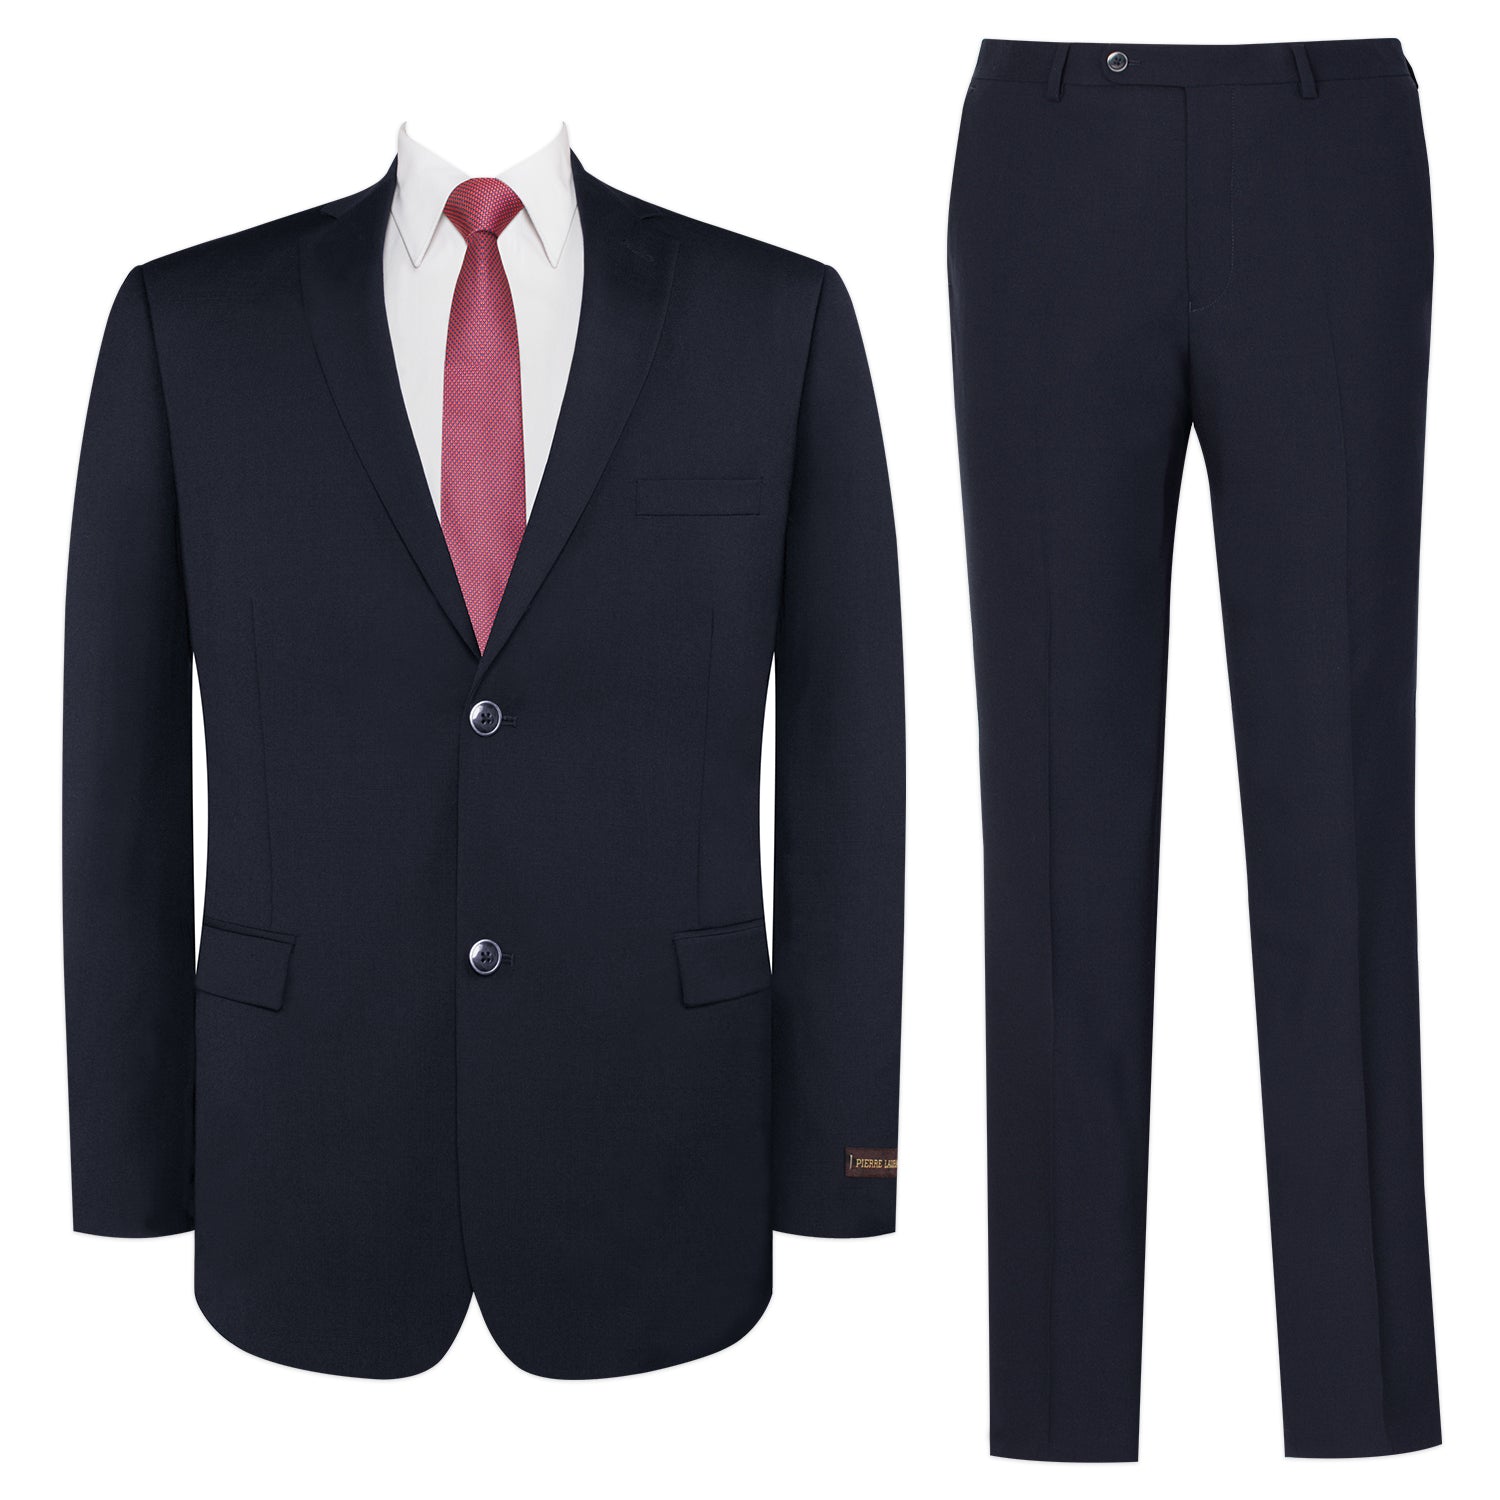 Men's 2-Piece Slim Fit 2 Button Wool Blend Premium Business Suit